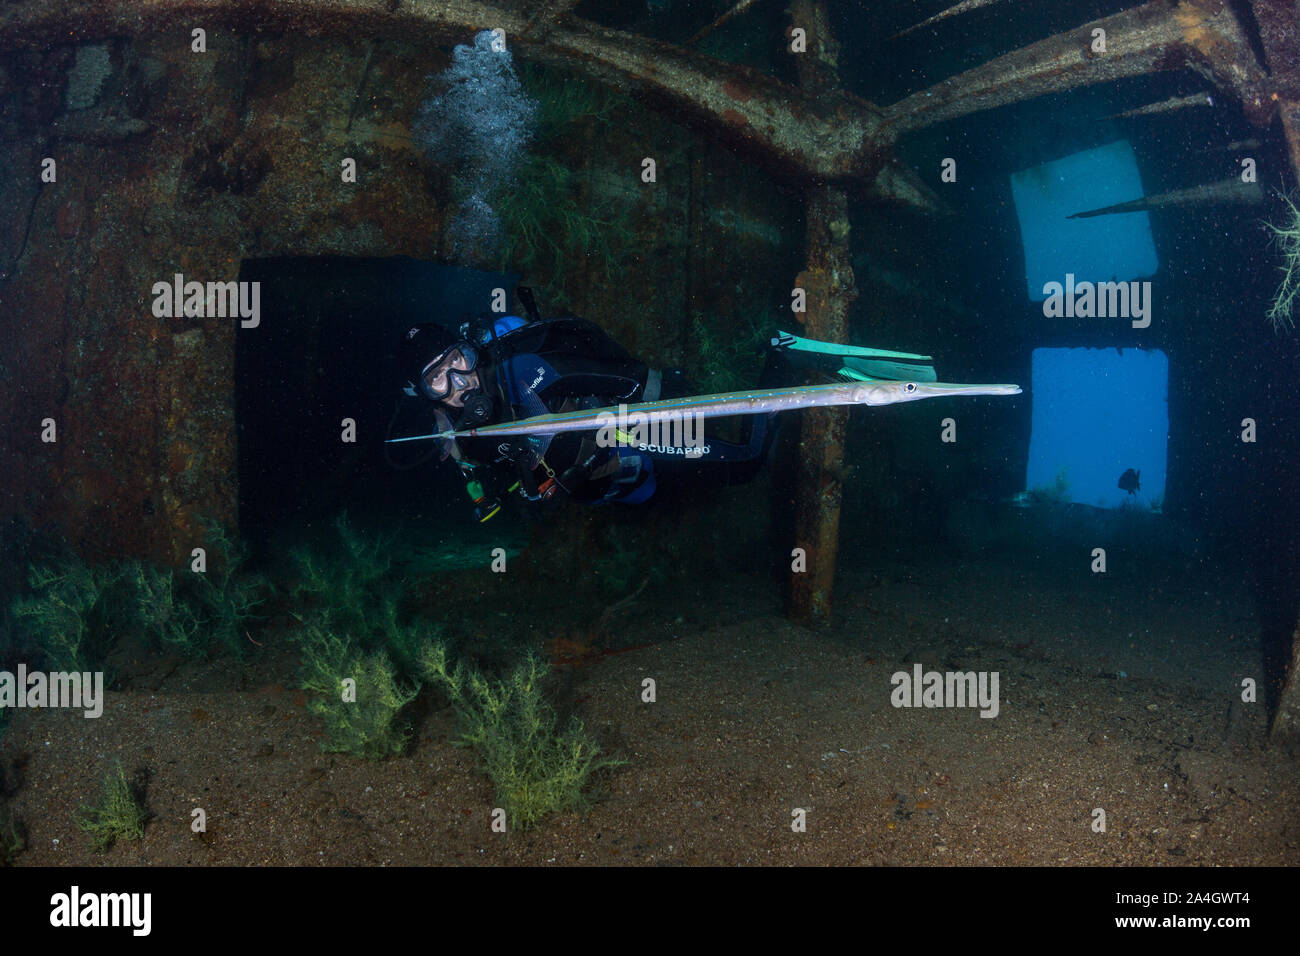 A scuba diver admires a reef cornetfish (Fistularia commersonii) inside the Fang Ming shipwreck near La Paz, Mexico. Stock Photo